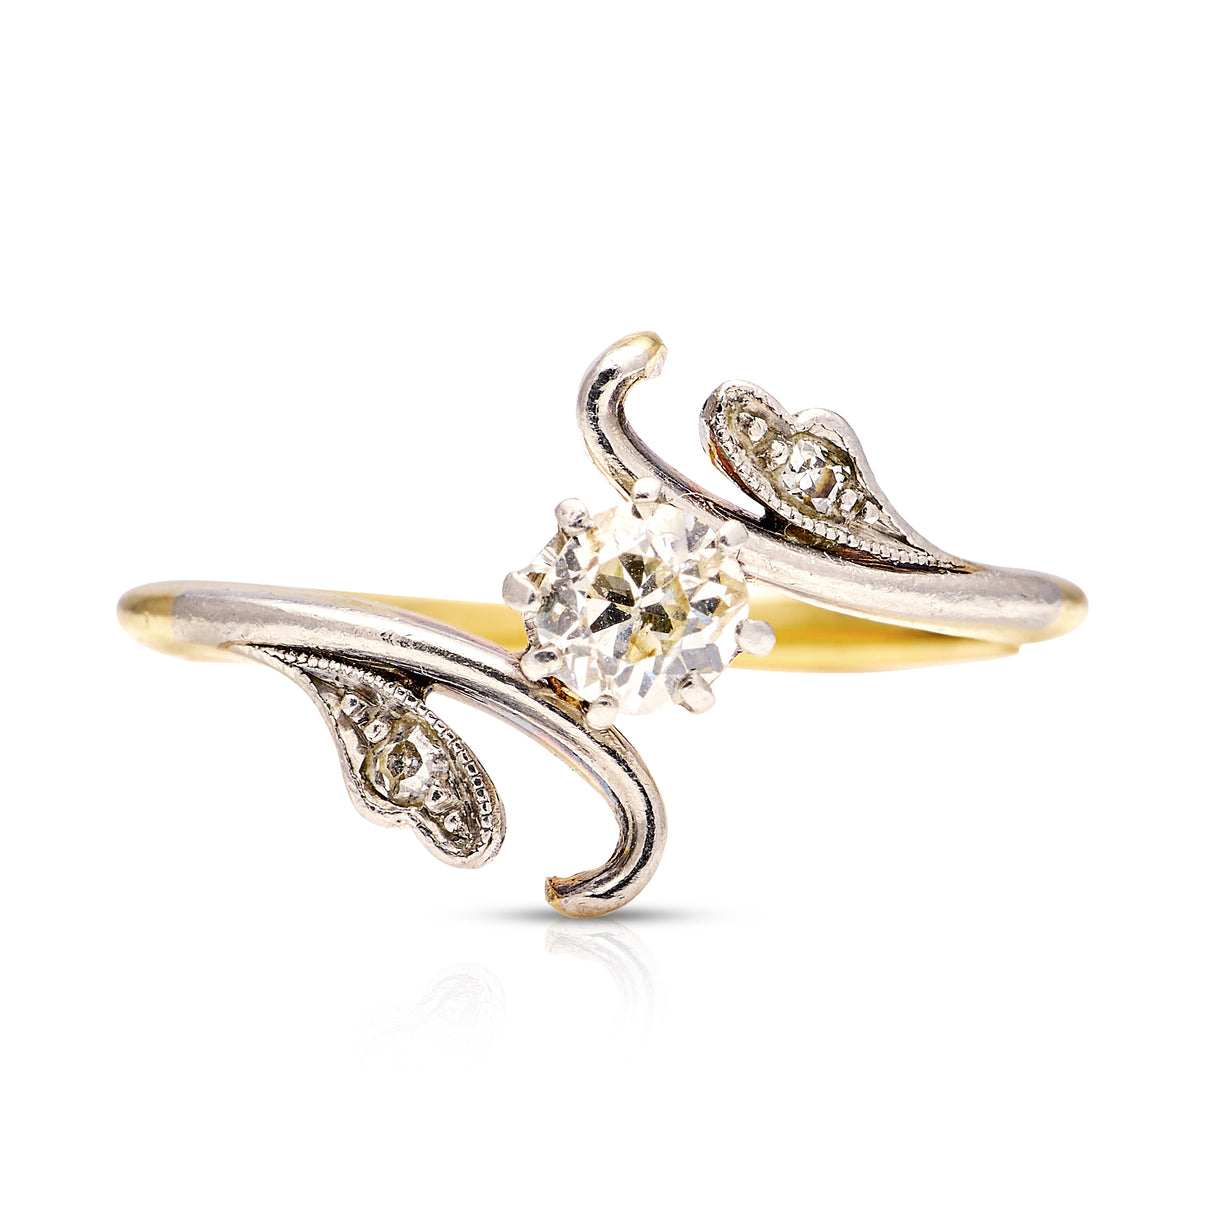 Antique, Art Nouveau solitaire diamond engagement ring, 14ct yellow gold